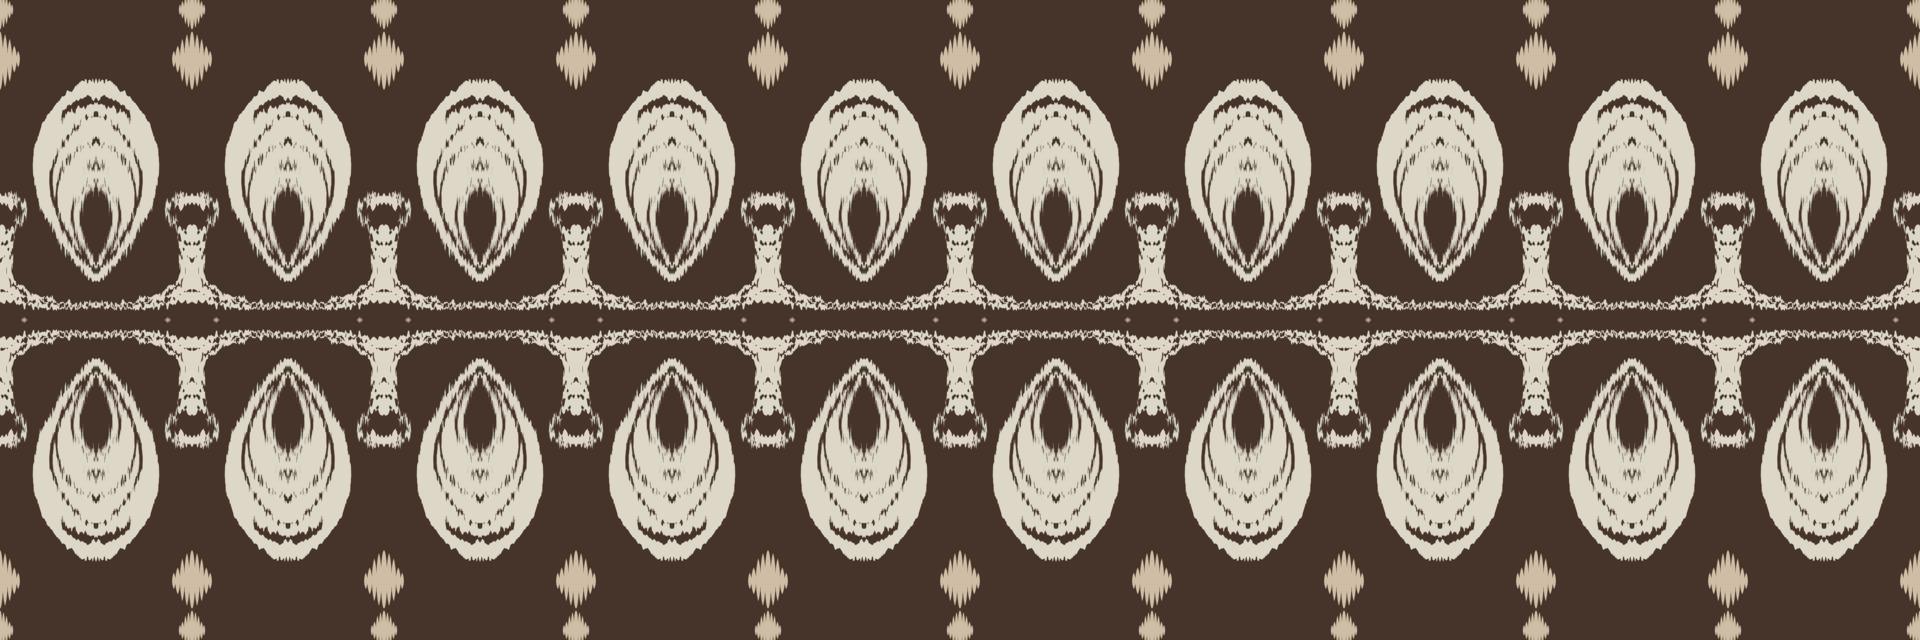 batik têxtil filipino ikat padrão sem costura design de vetor digital para impressão saree kurti borneo tecido borda escova símbolos designer de amostras